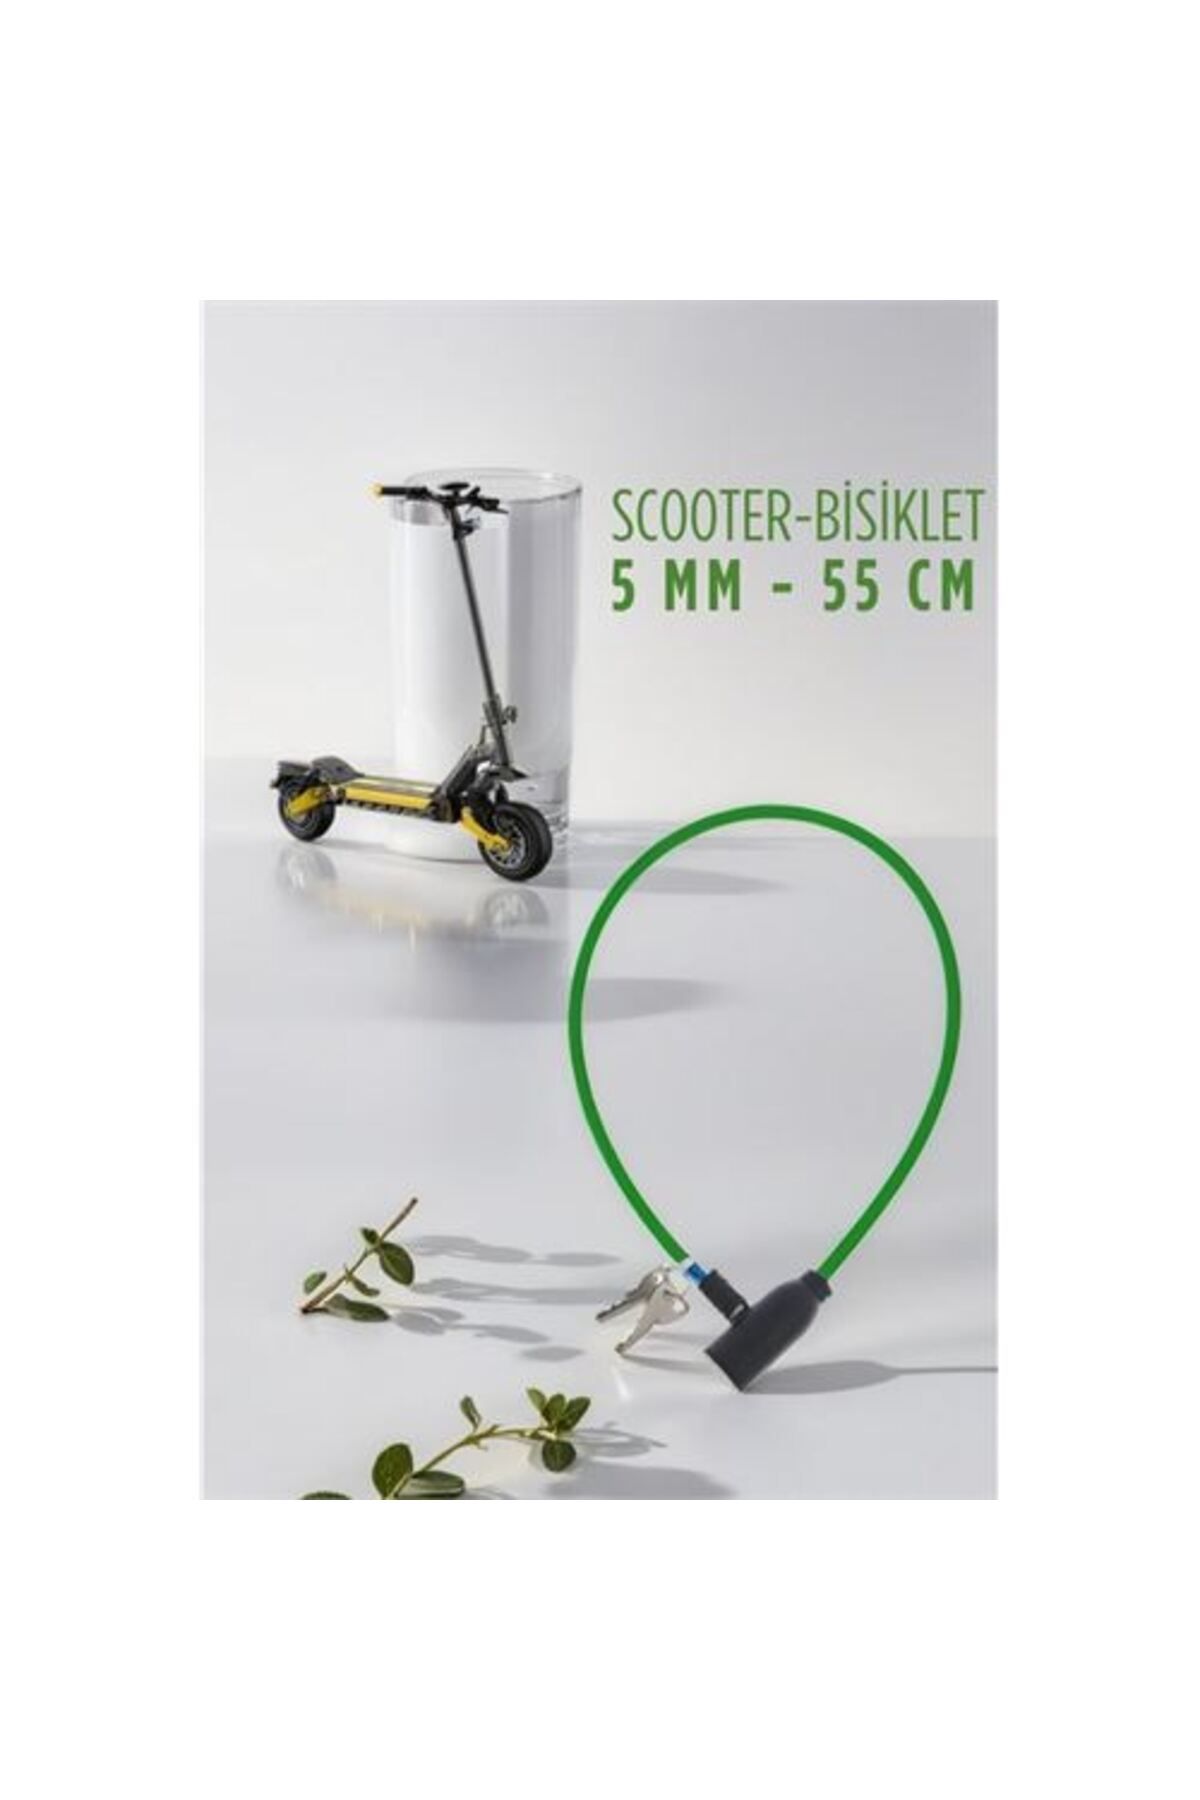 ModaCar Scoooter Bisiklet Kilidi 720122